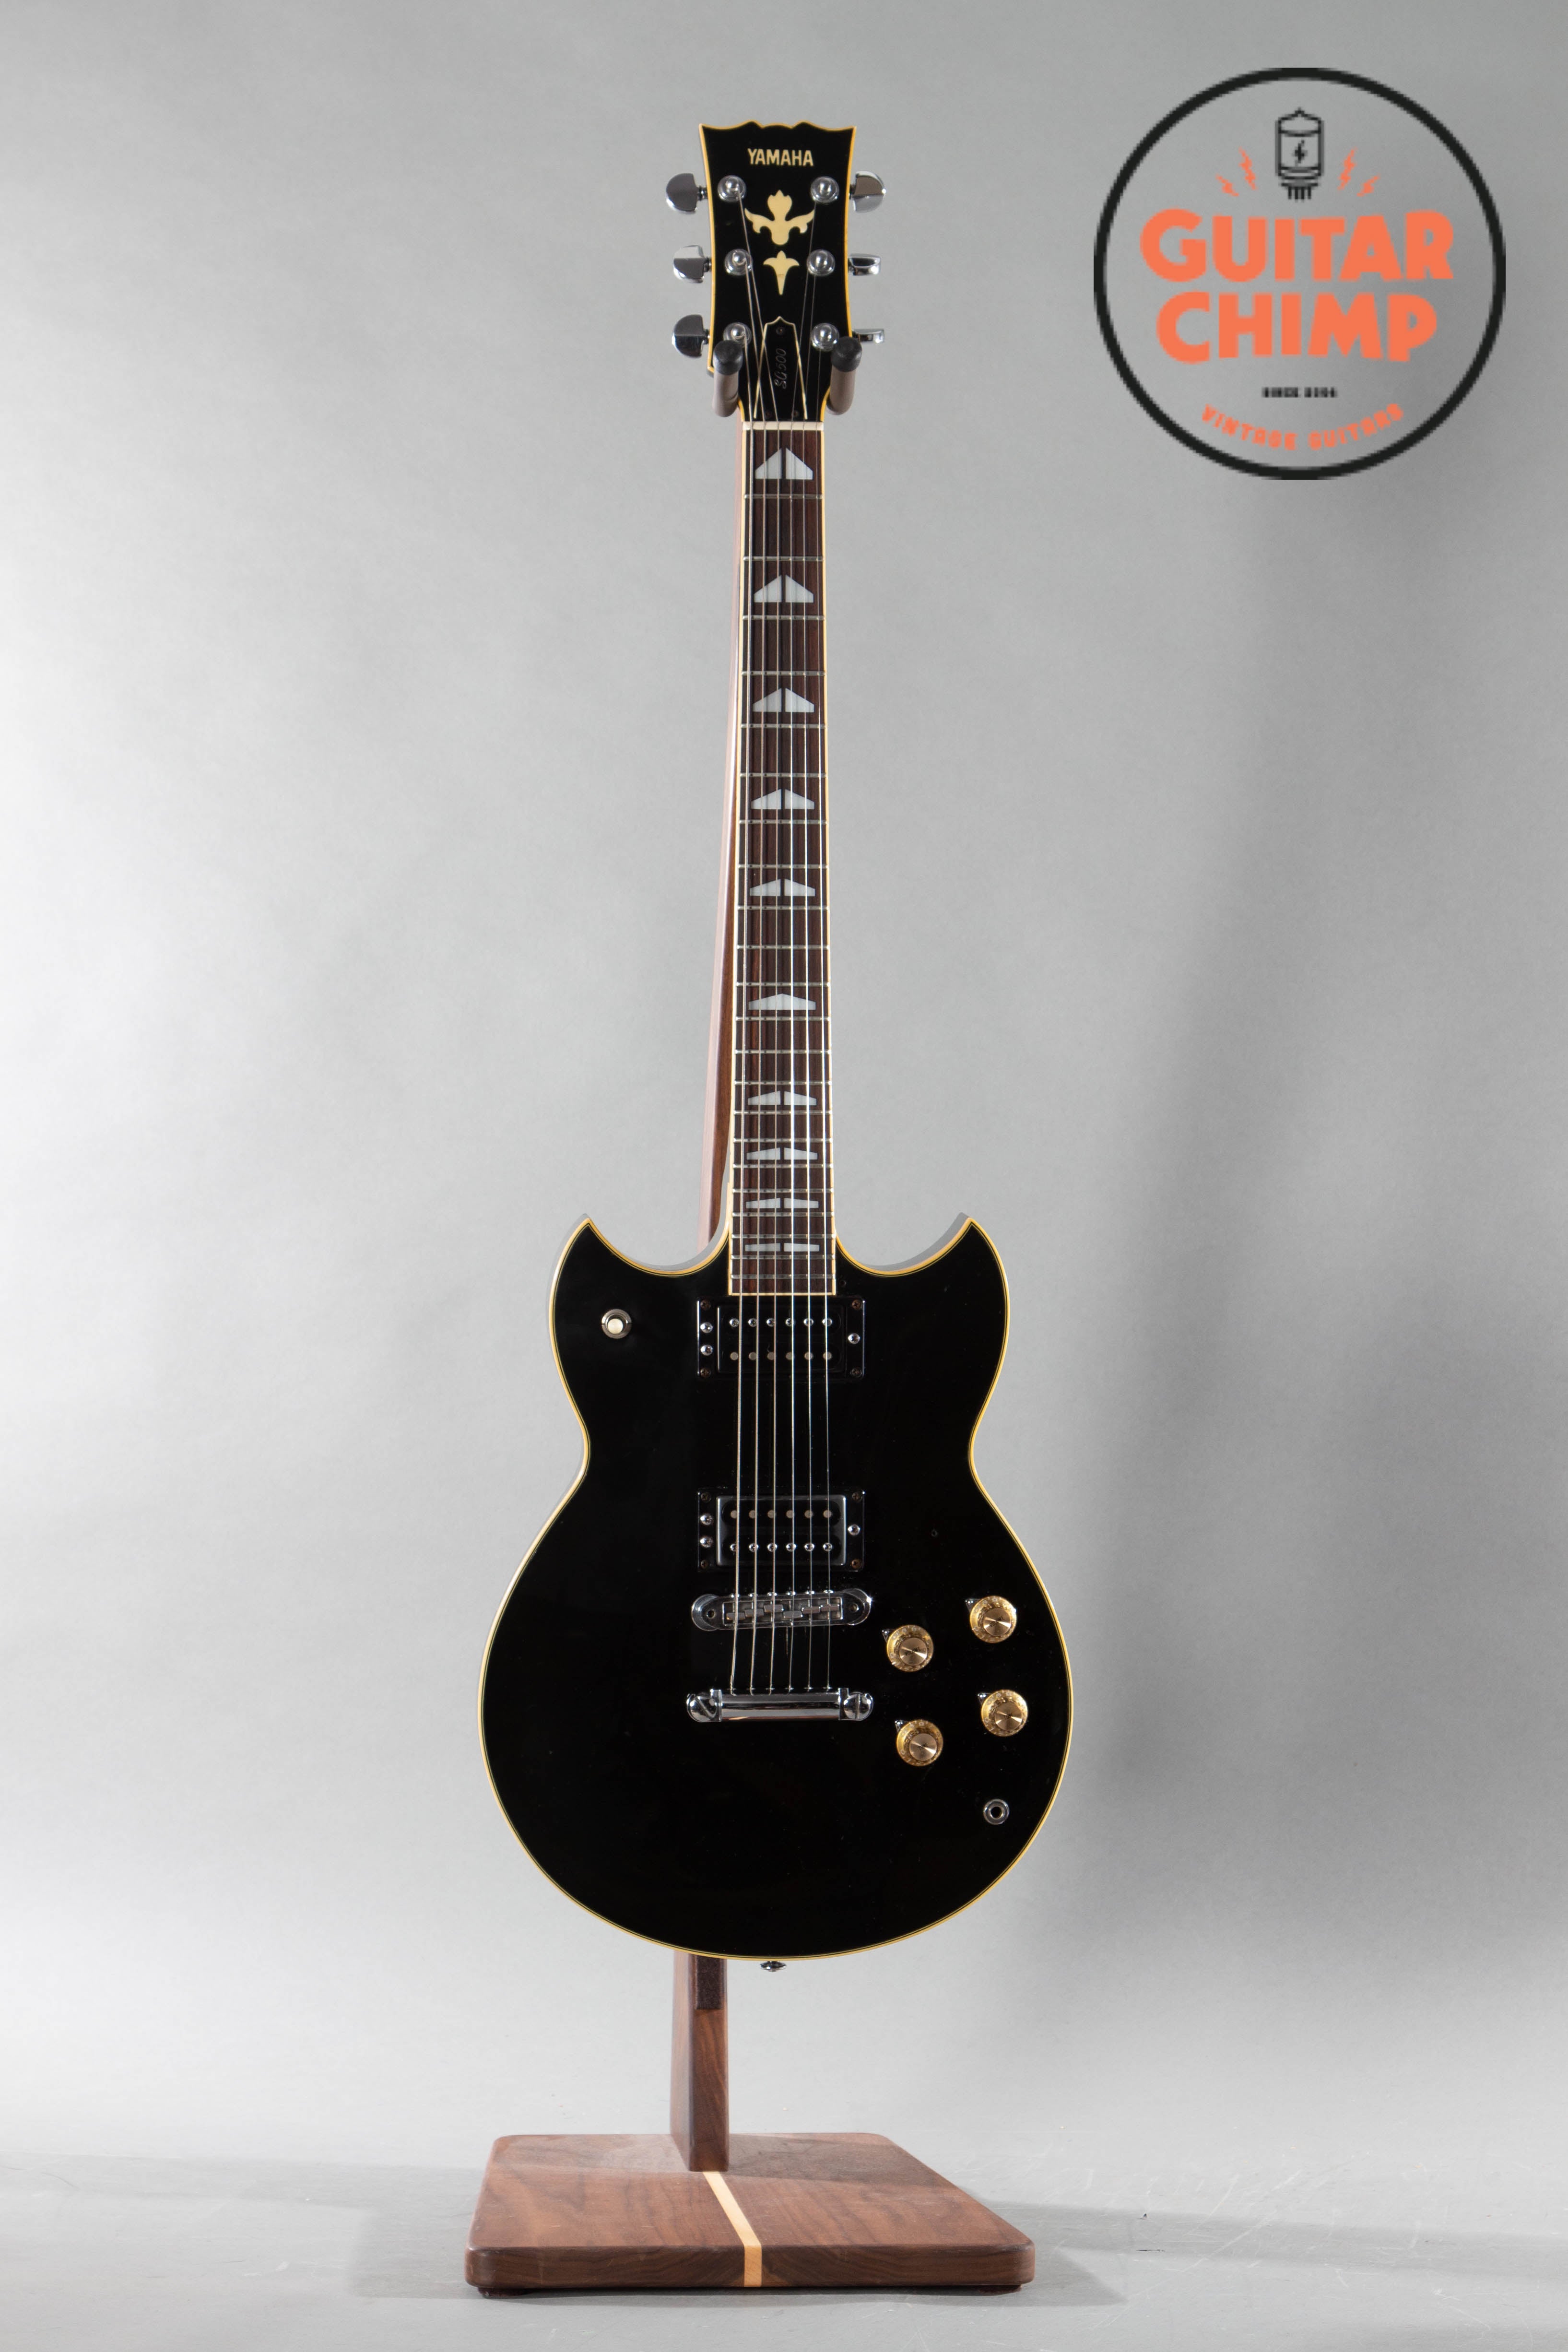 1978 Yamaha SG-500 Black | Guitar Chimp